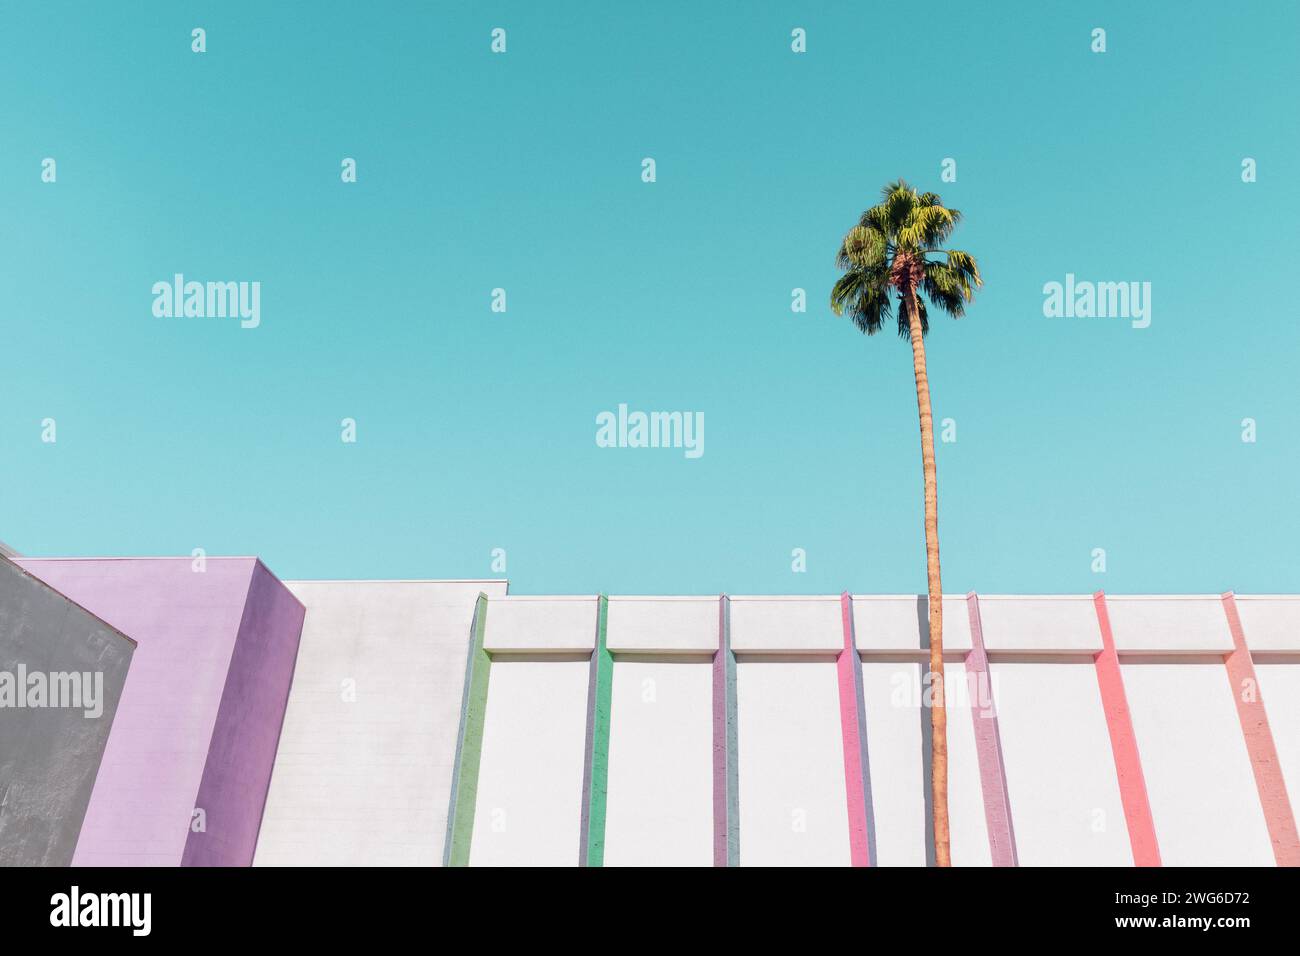 Bâtiment blanc avec des rayures arc-en-ciel colorées et un palmier à Palm Springs, Californie Banque D'Images